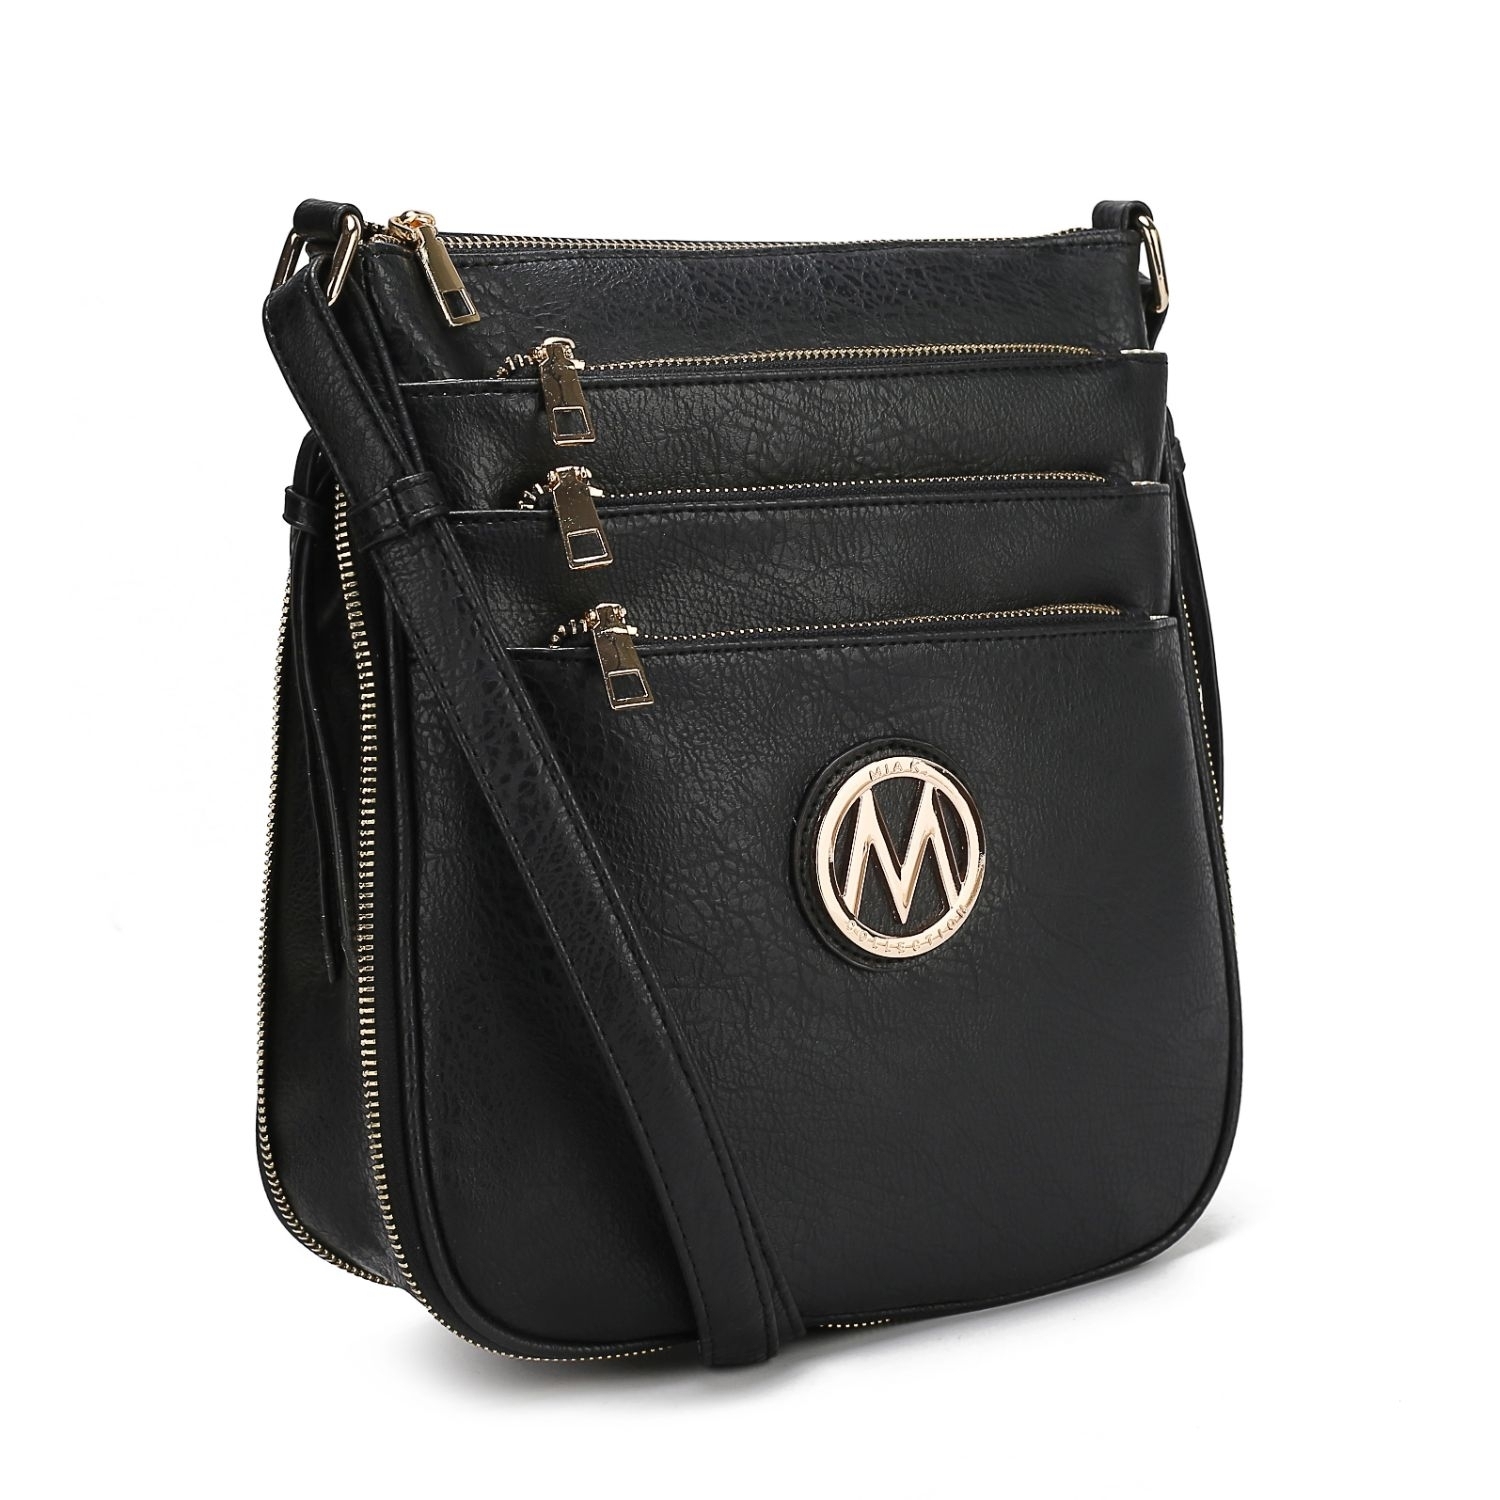 MKF Collection Salome Expandable Crossbody Handbag By Mia K. - Fuchsia